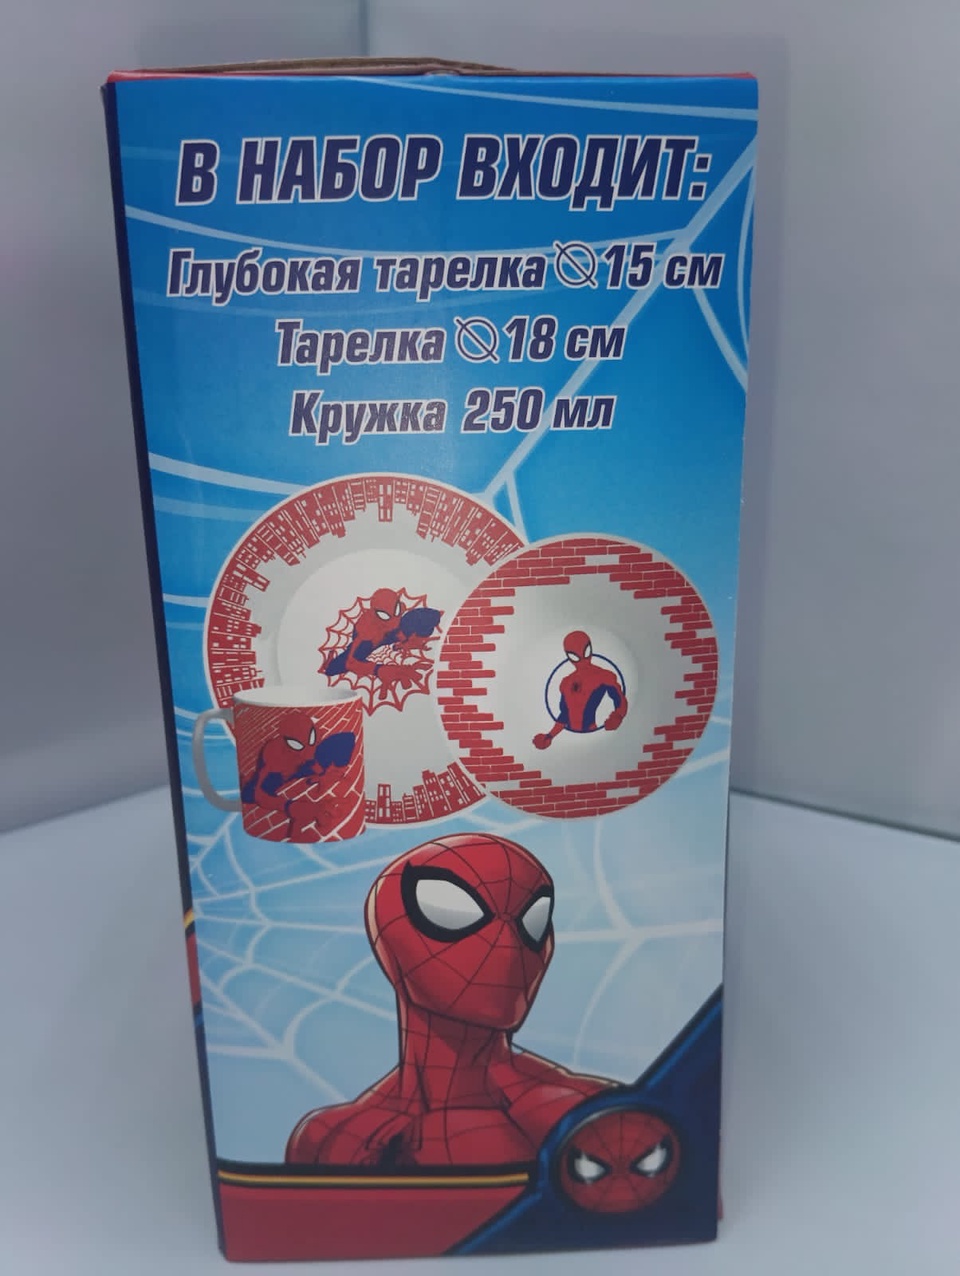 Подарочный набор посуды «Человек-паук» - 884 ₽, заказать онлайн.